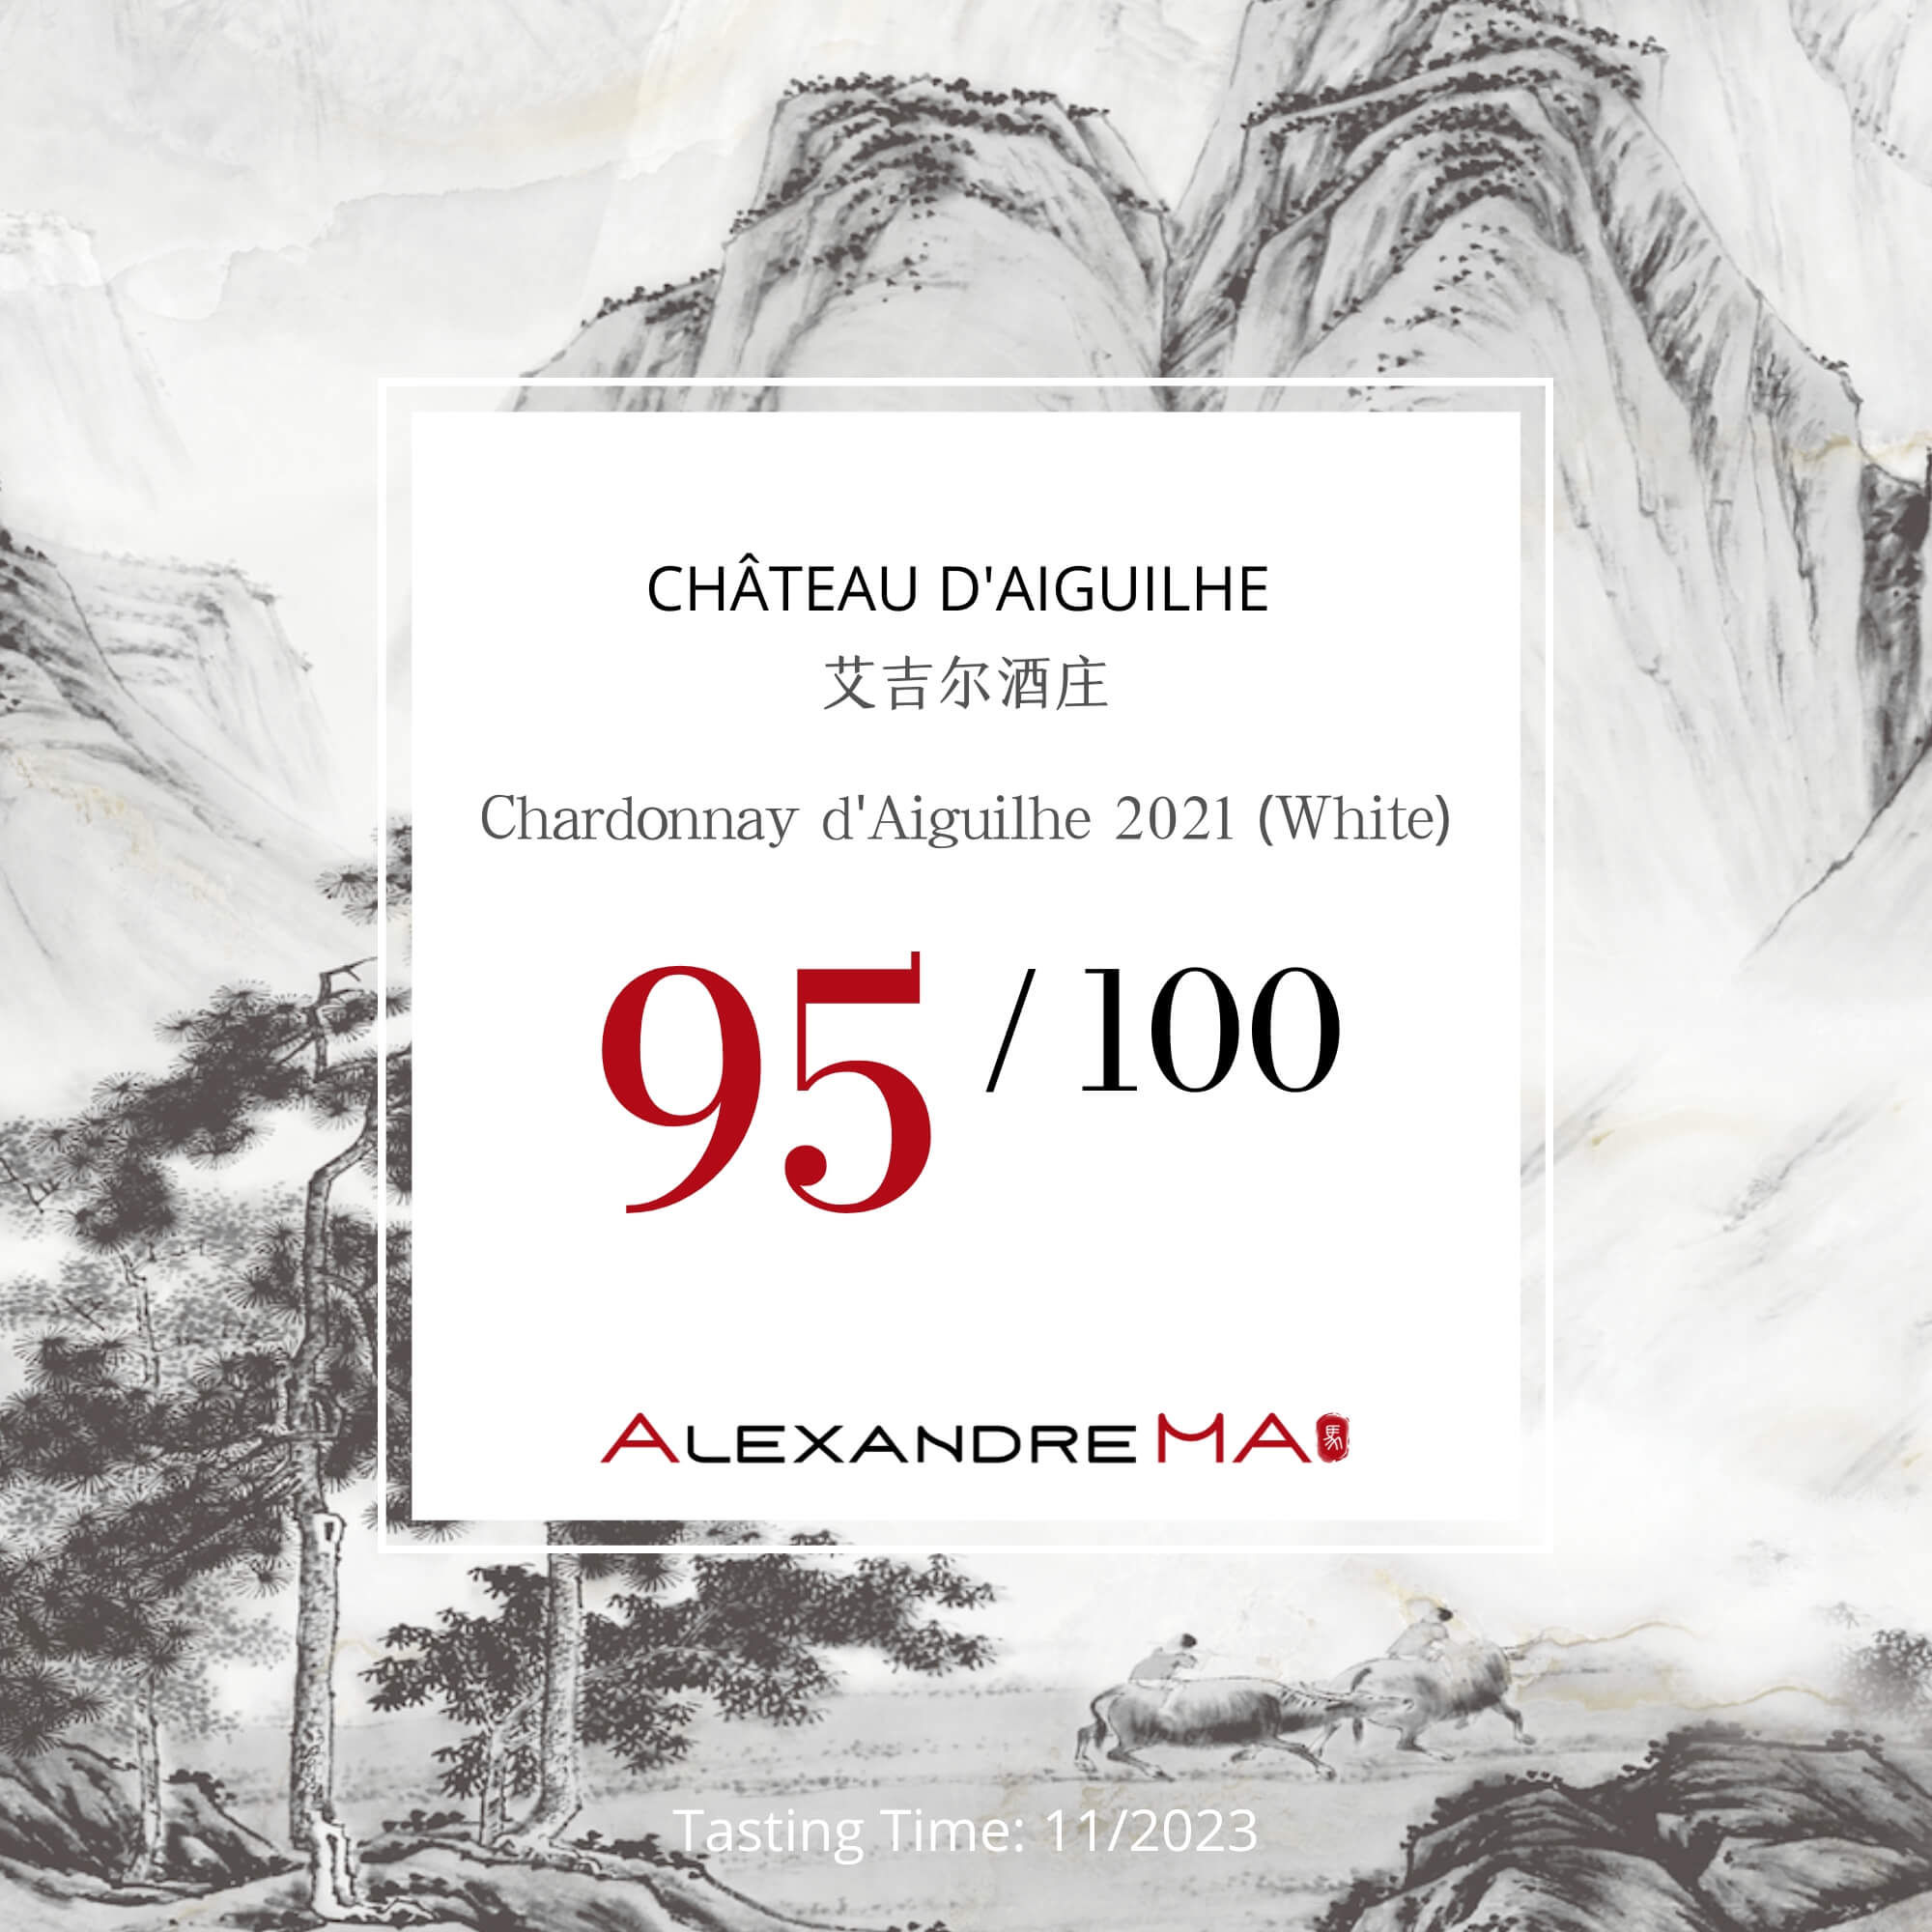 Chardonnay d’Aiguilhe 2021-White - Alexandre MA